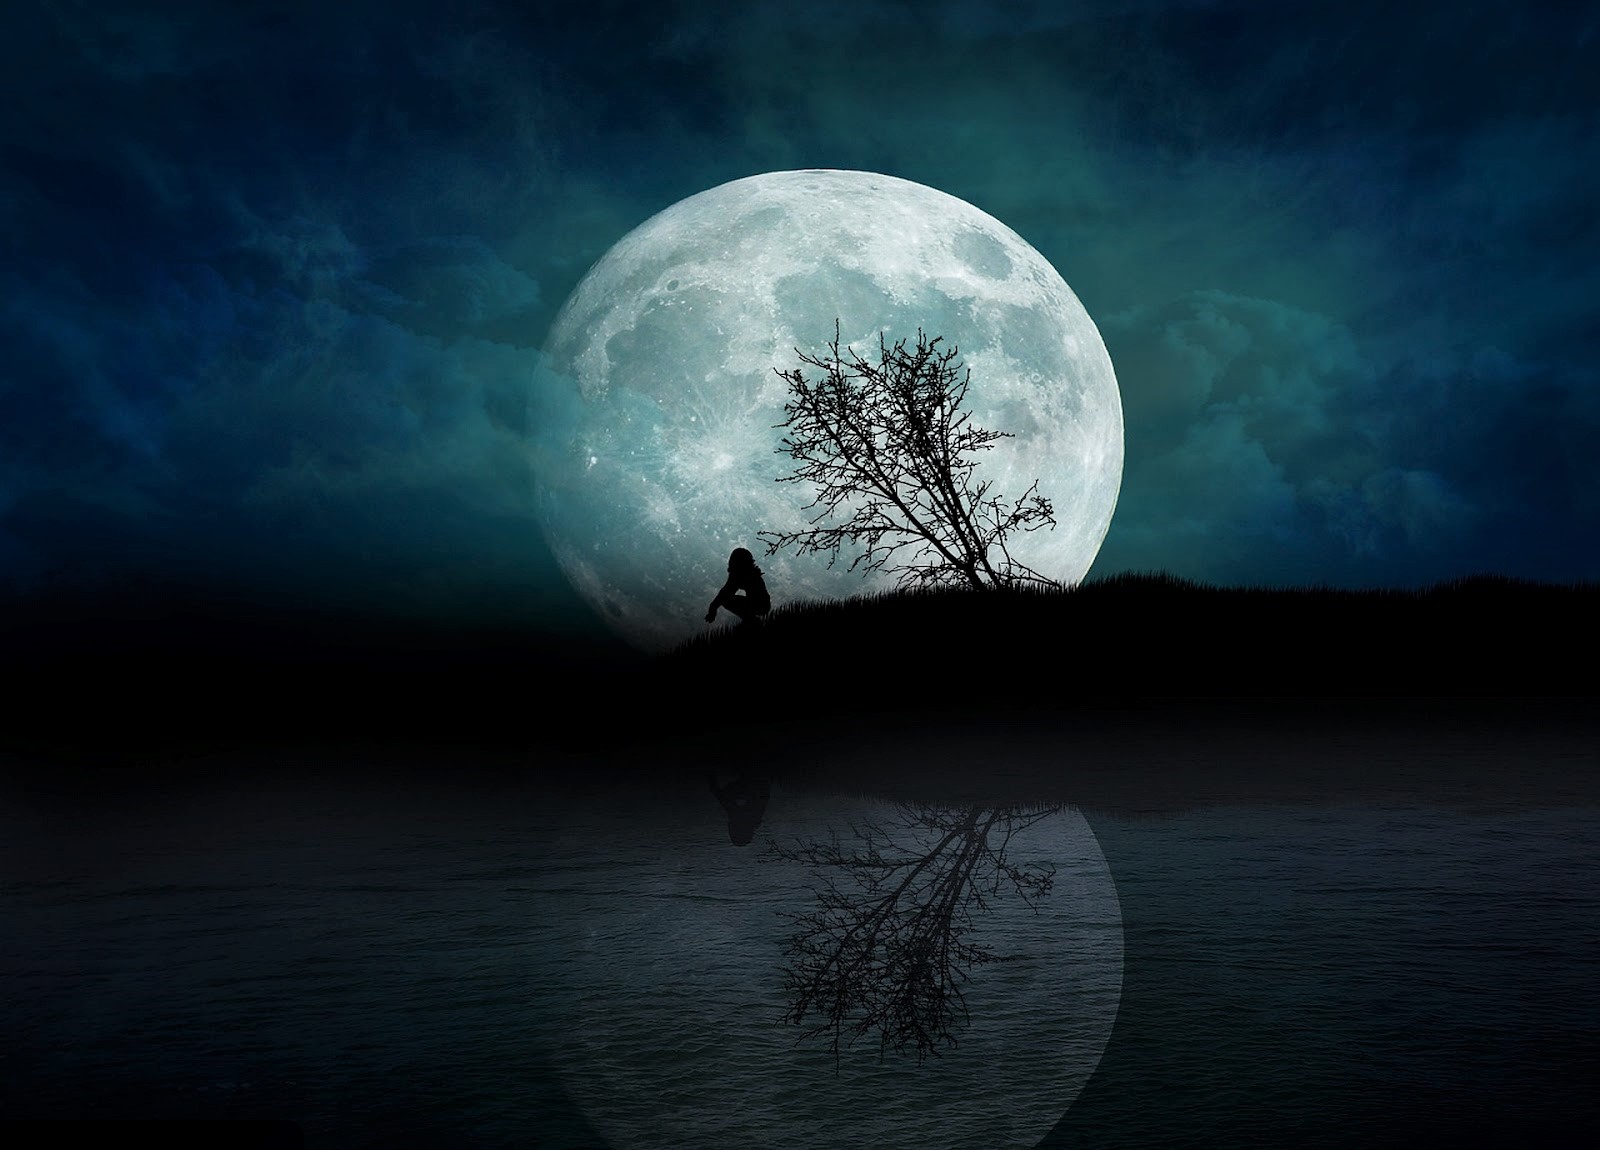 Скачать обои бесплатно Ночь, Луна, Силуэт, Дерево, Одинокий, Фантазия, Один, Художественные картинка на рабочий стол ПК